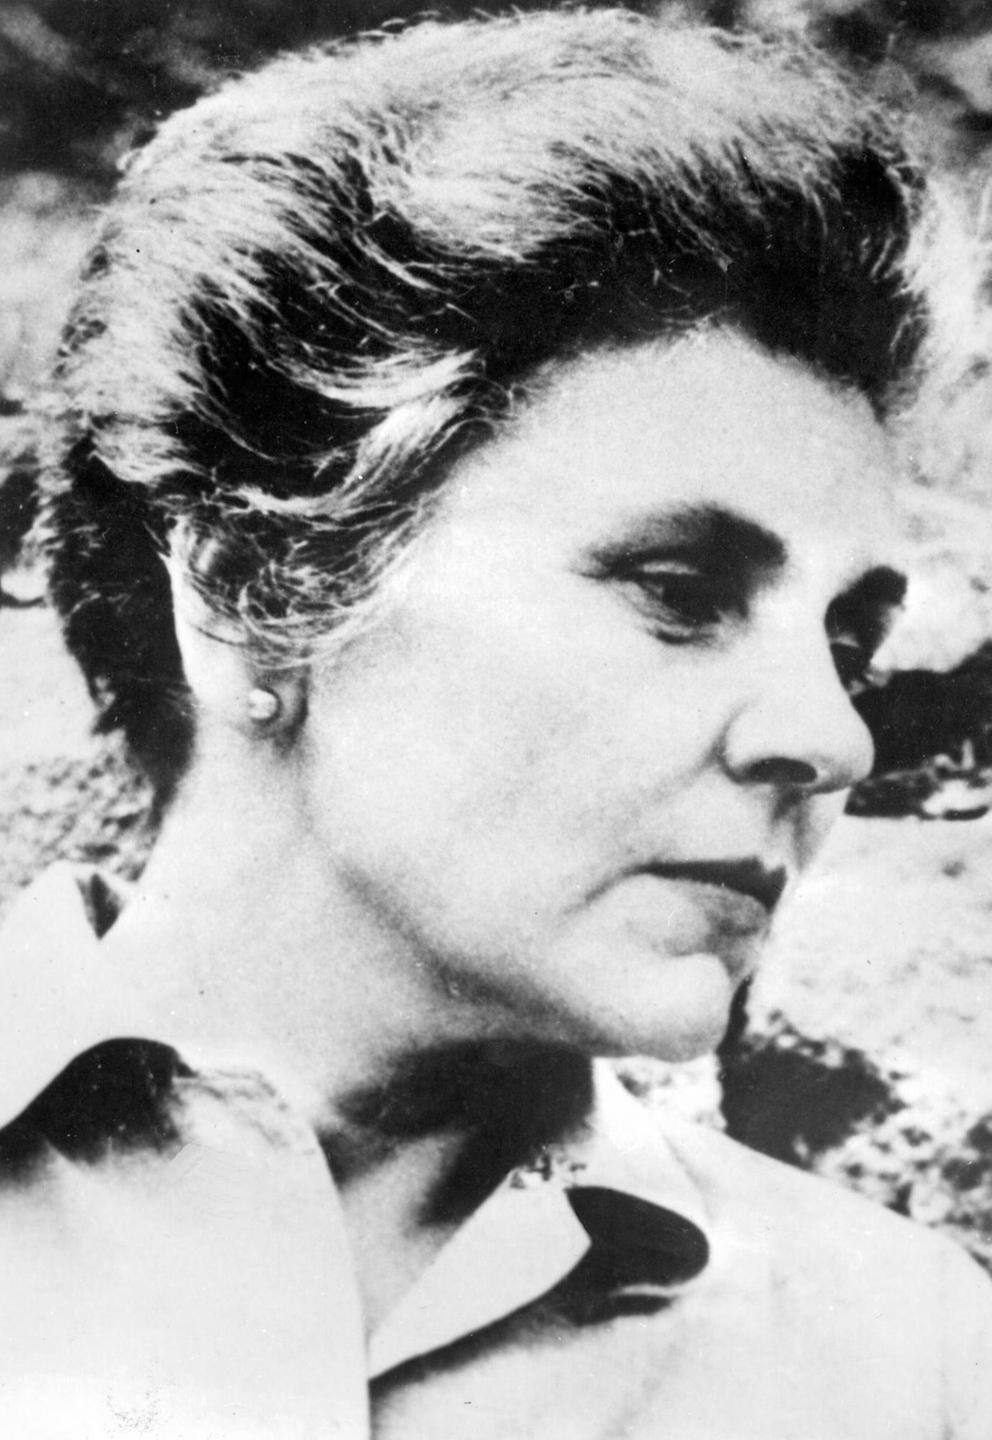 Porträtfoto der US-amerikanischen Dichterin, Schriftstellerin und Pulitzer-Preis-Trägerin 1956, Elizabeth Bishop 